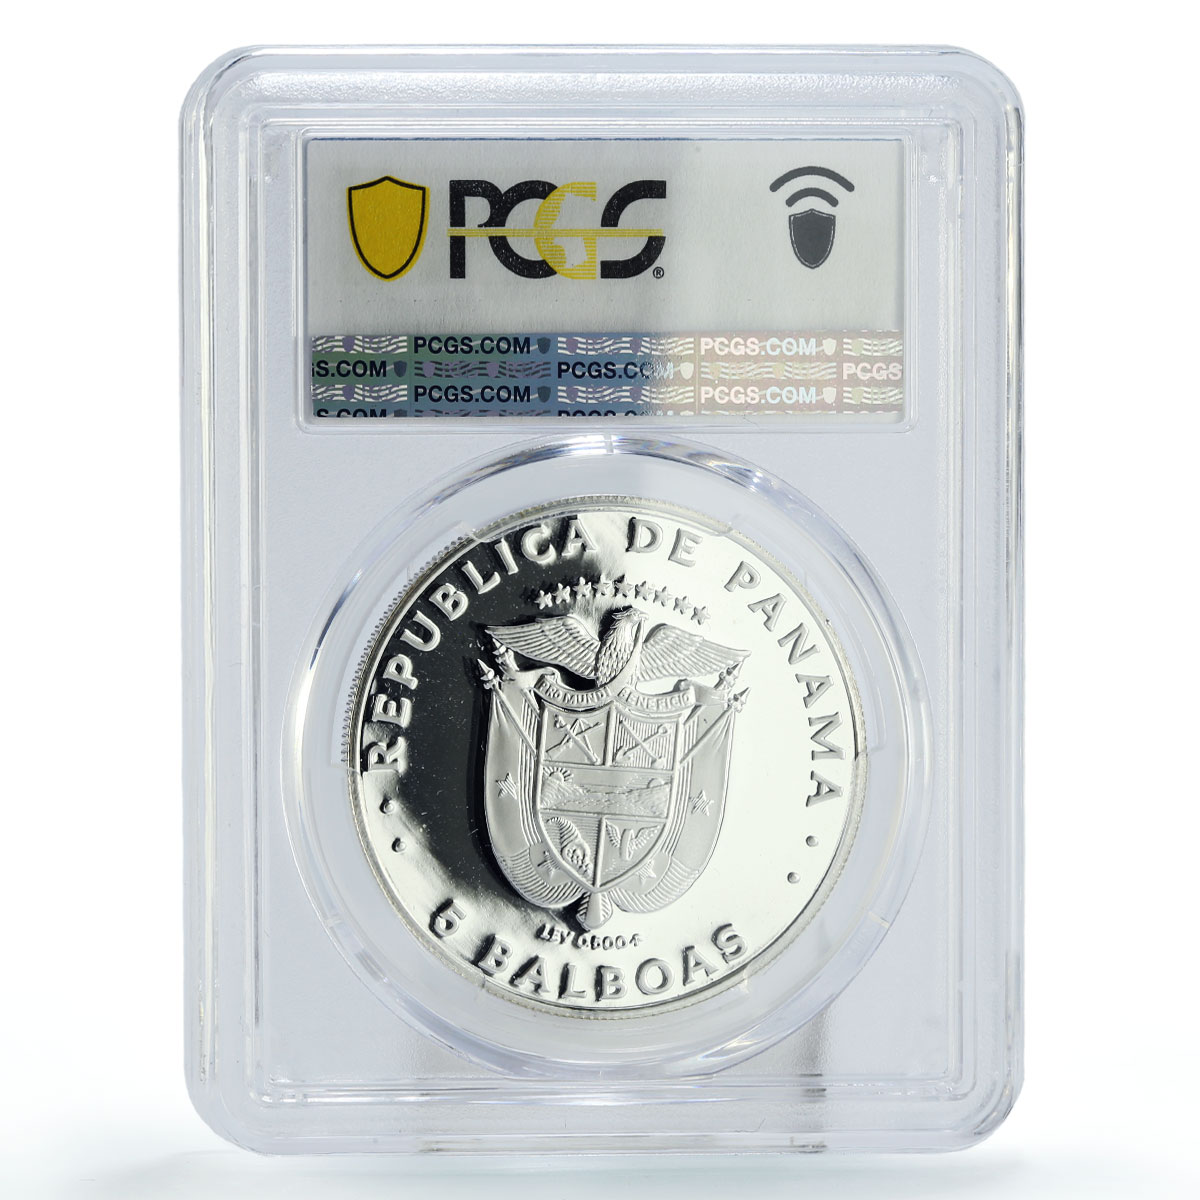 Panama 5 balboas Regular Coinage Belisario Porras PR65 PCGS silver coin 1981